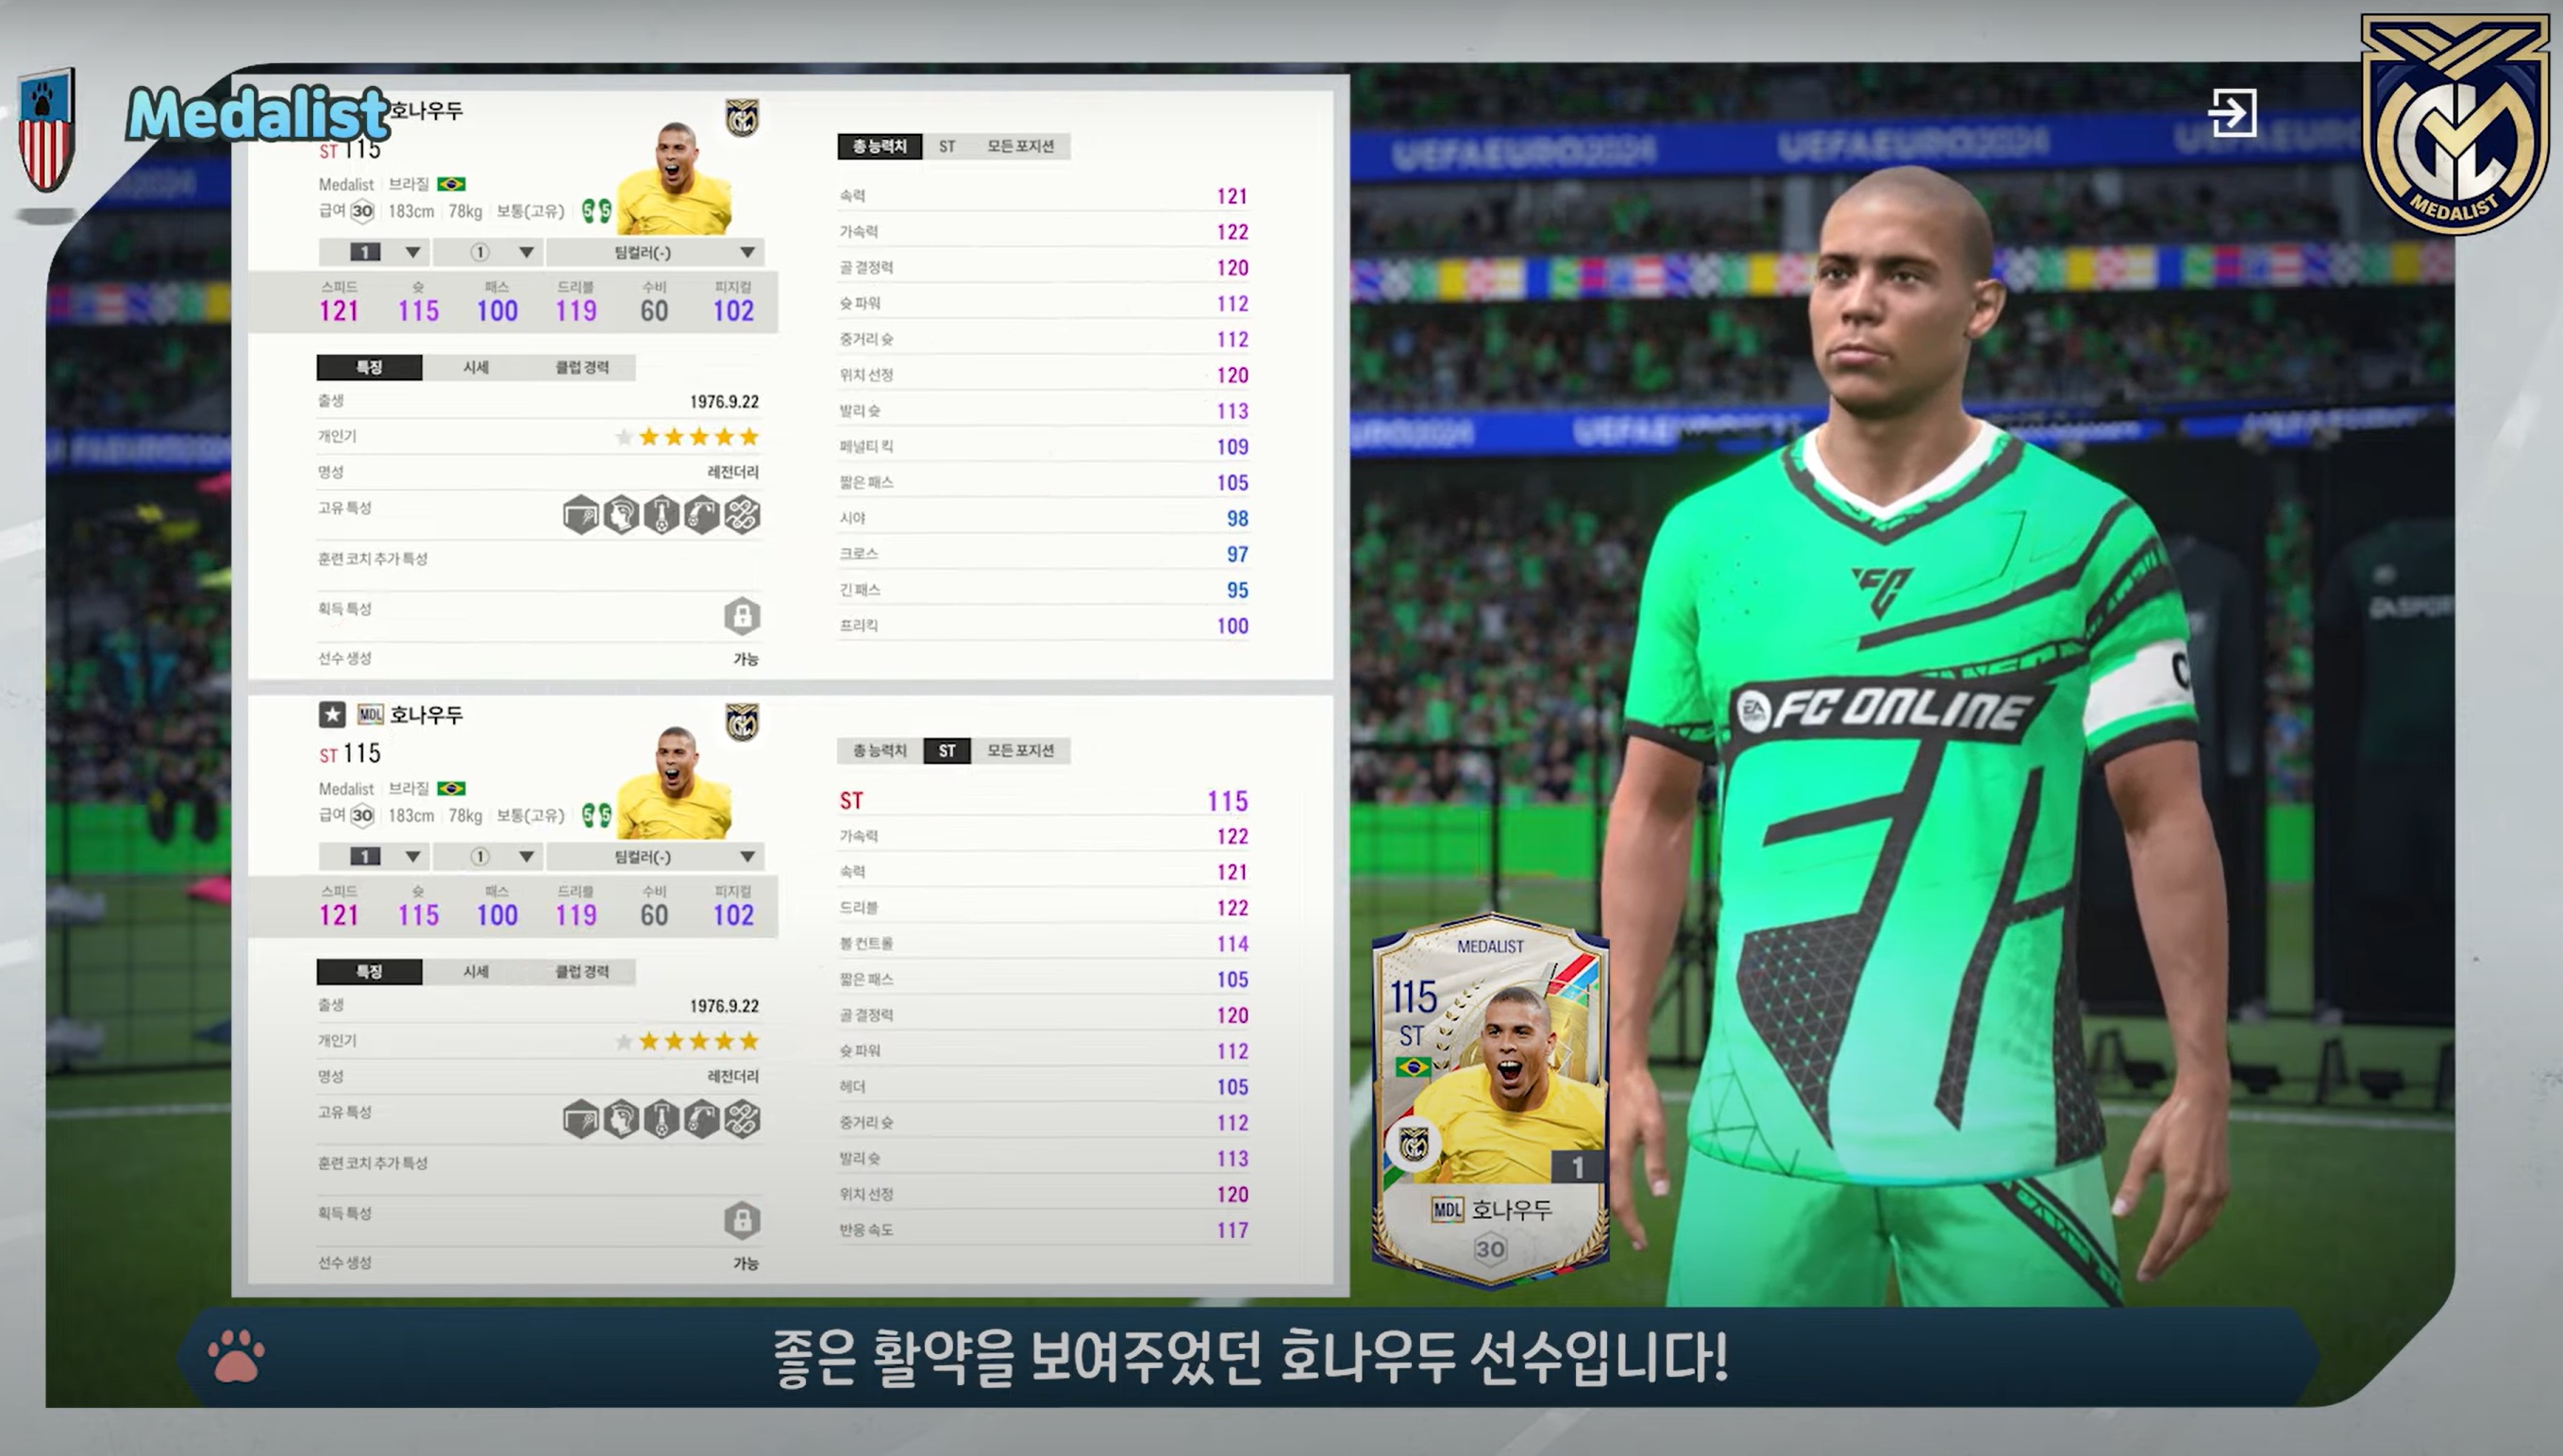 Thông tin cập nhật chính thức FC Online Hàn, ra mắt mùa thẻ mới Medalist